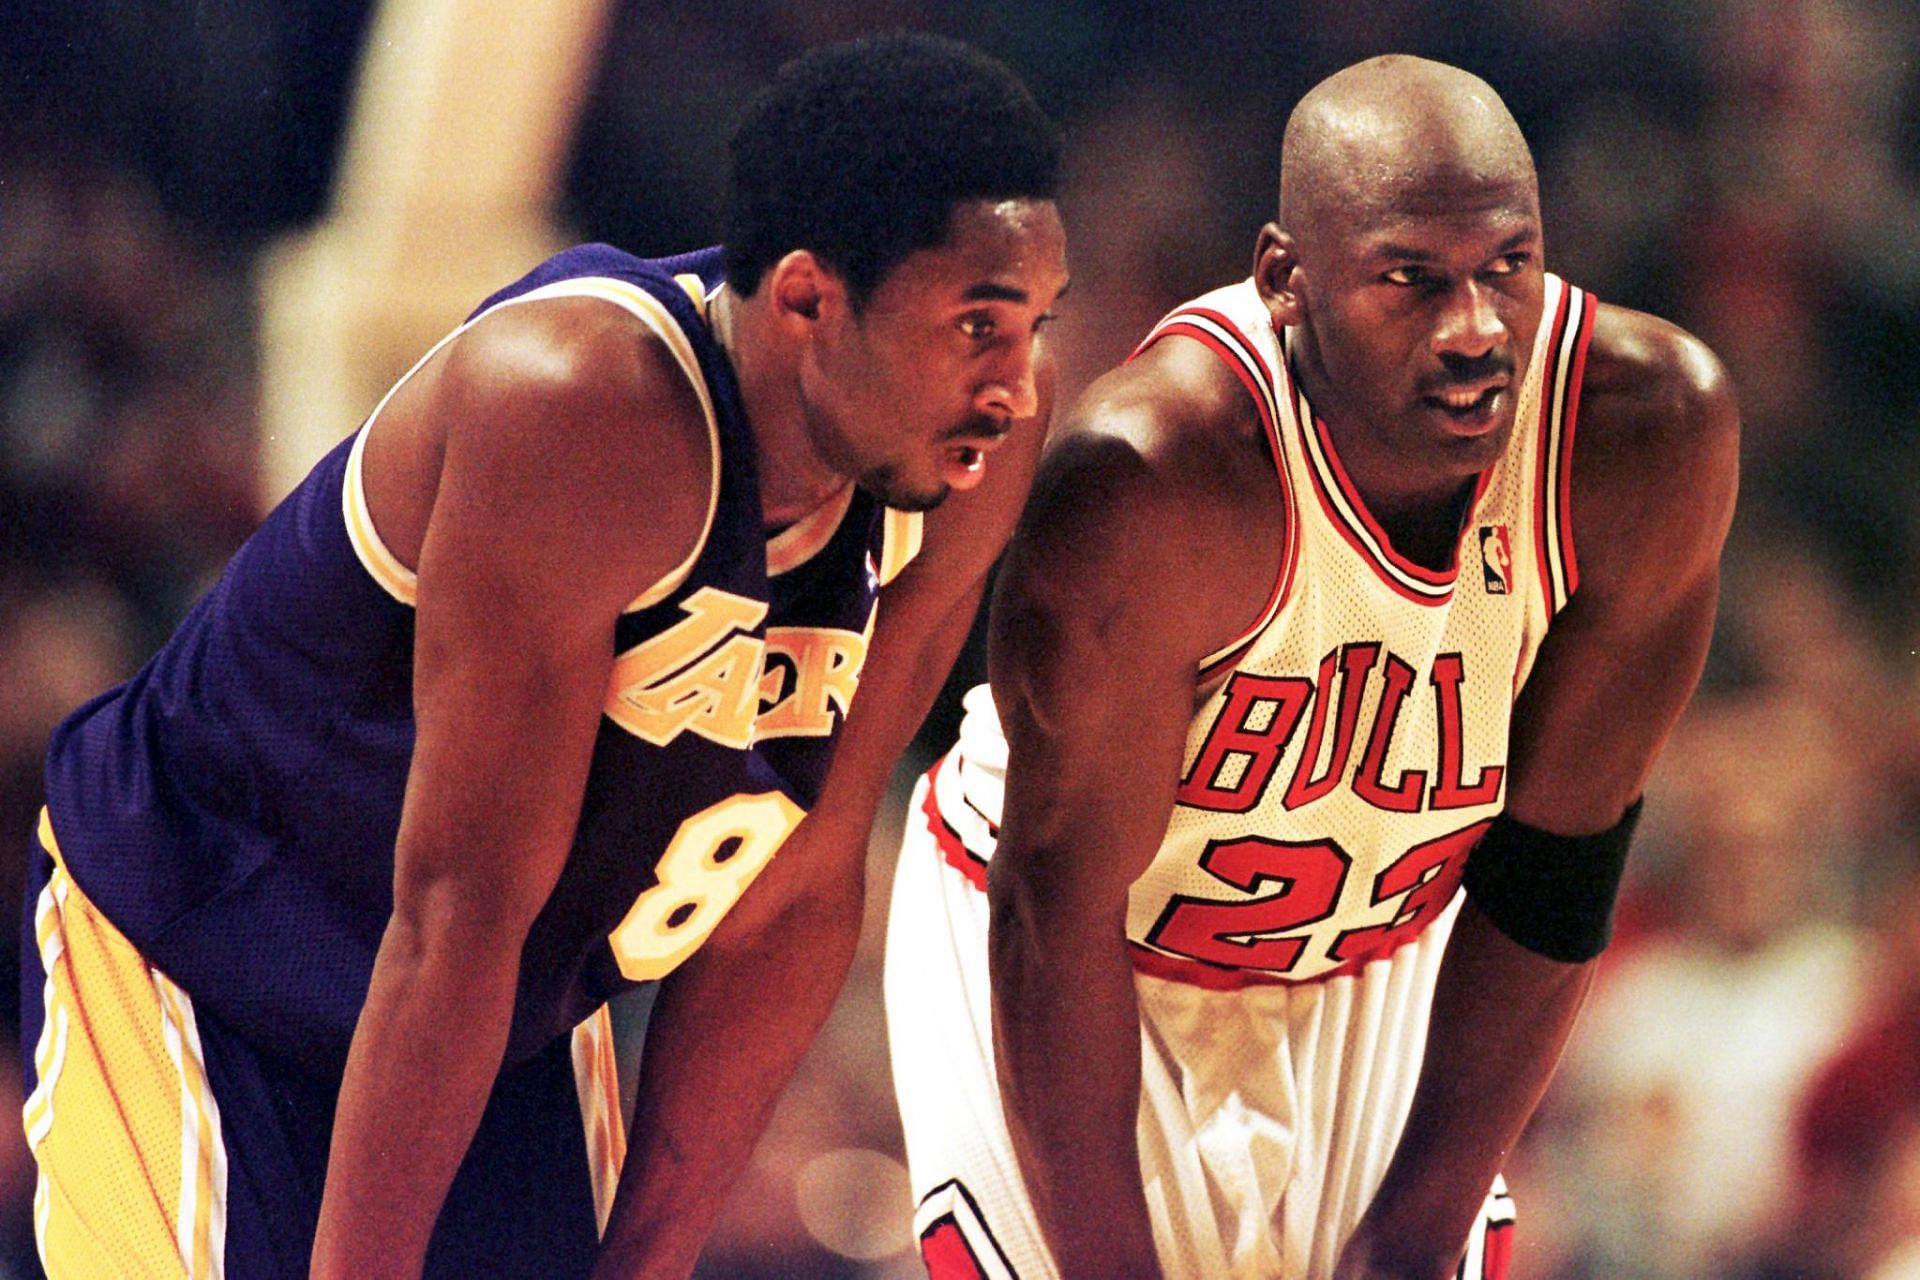 Kobe Bryant and Michael Jordan headline this NBA news roundup